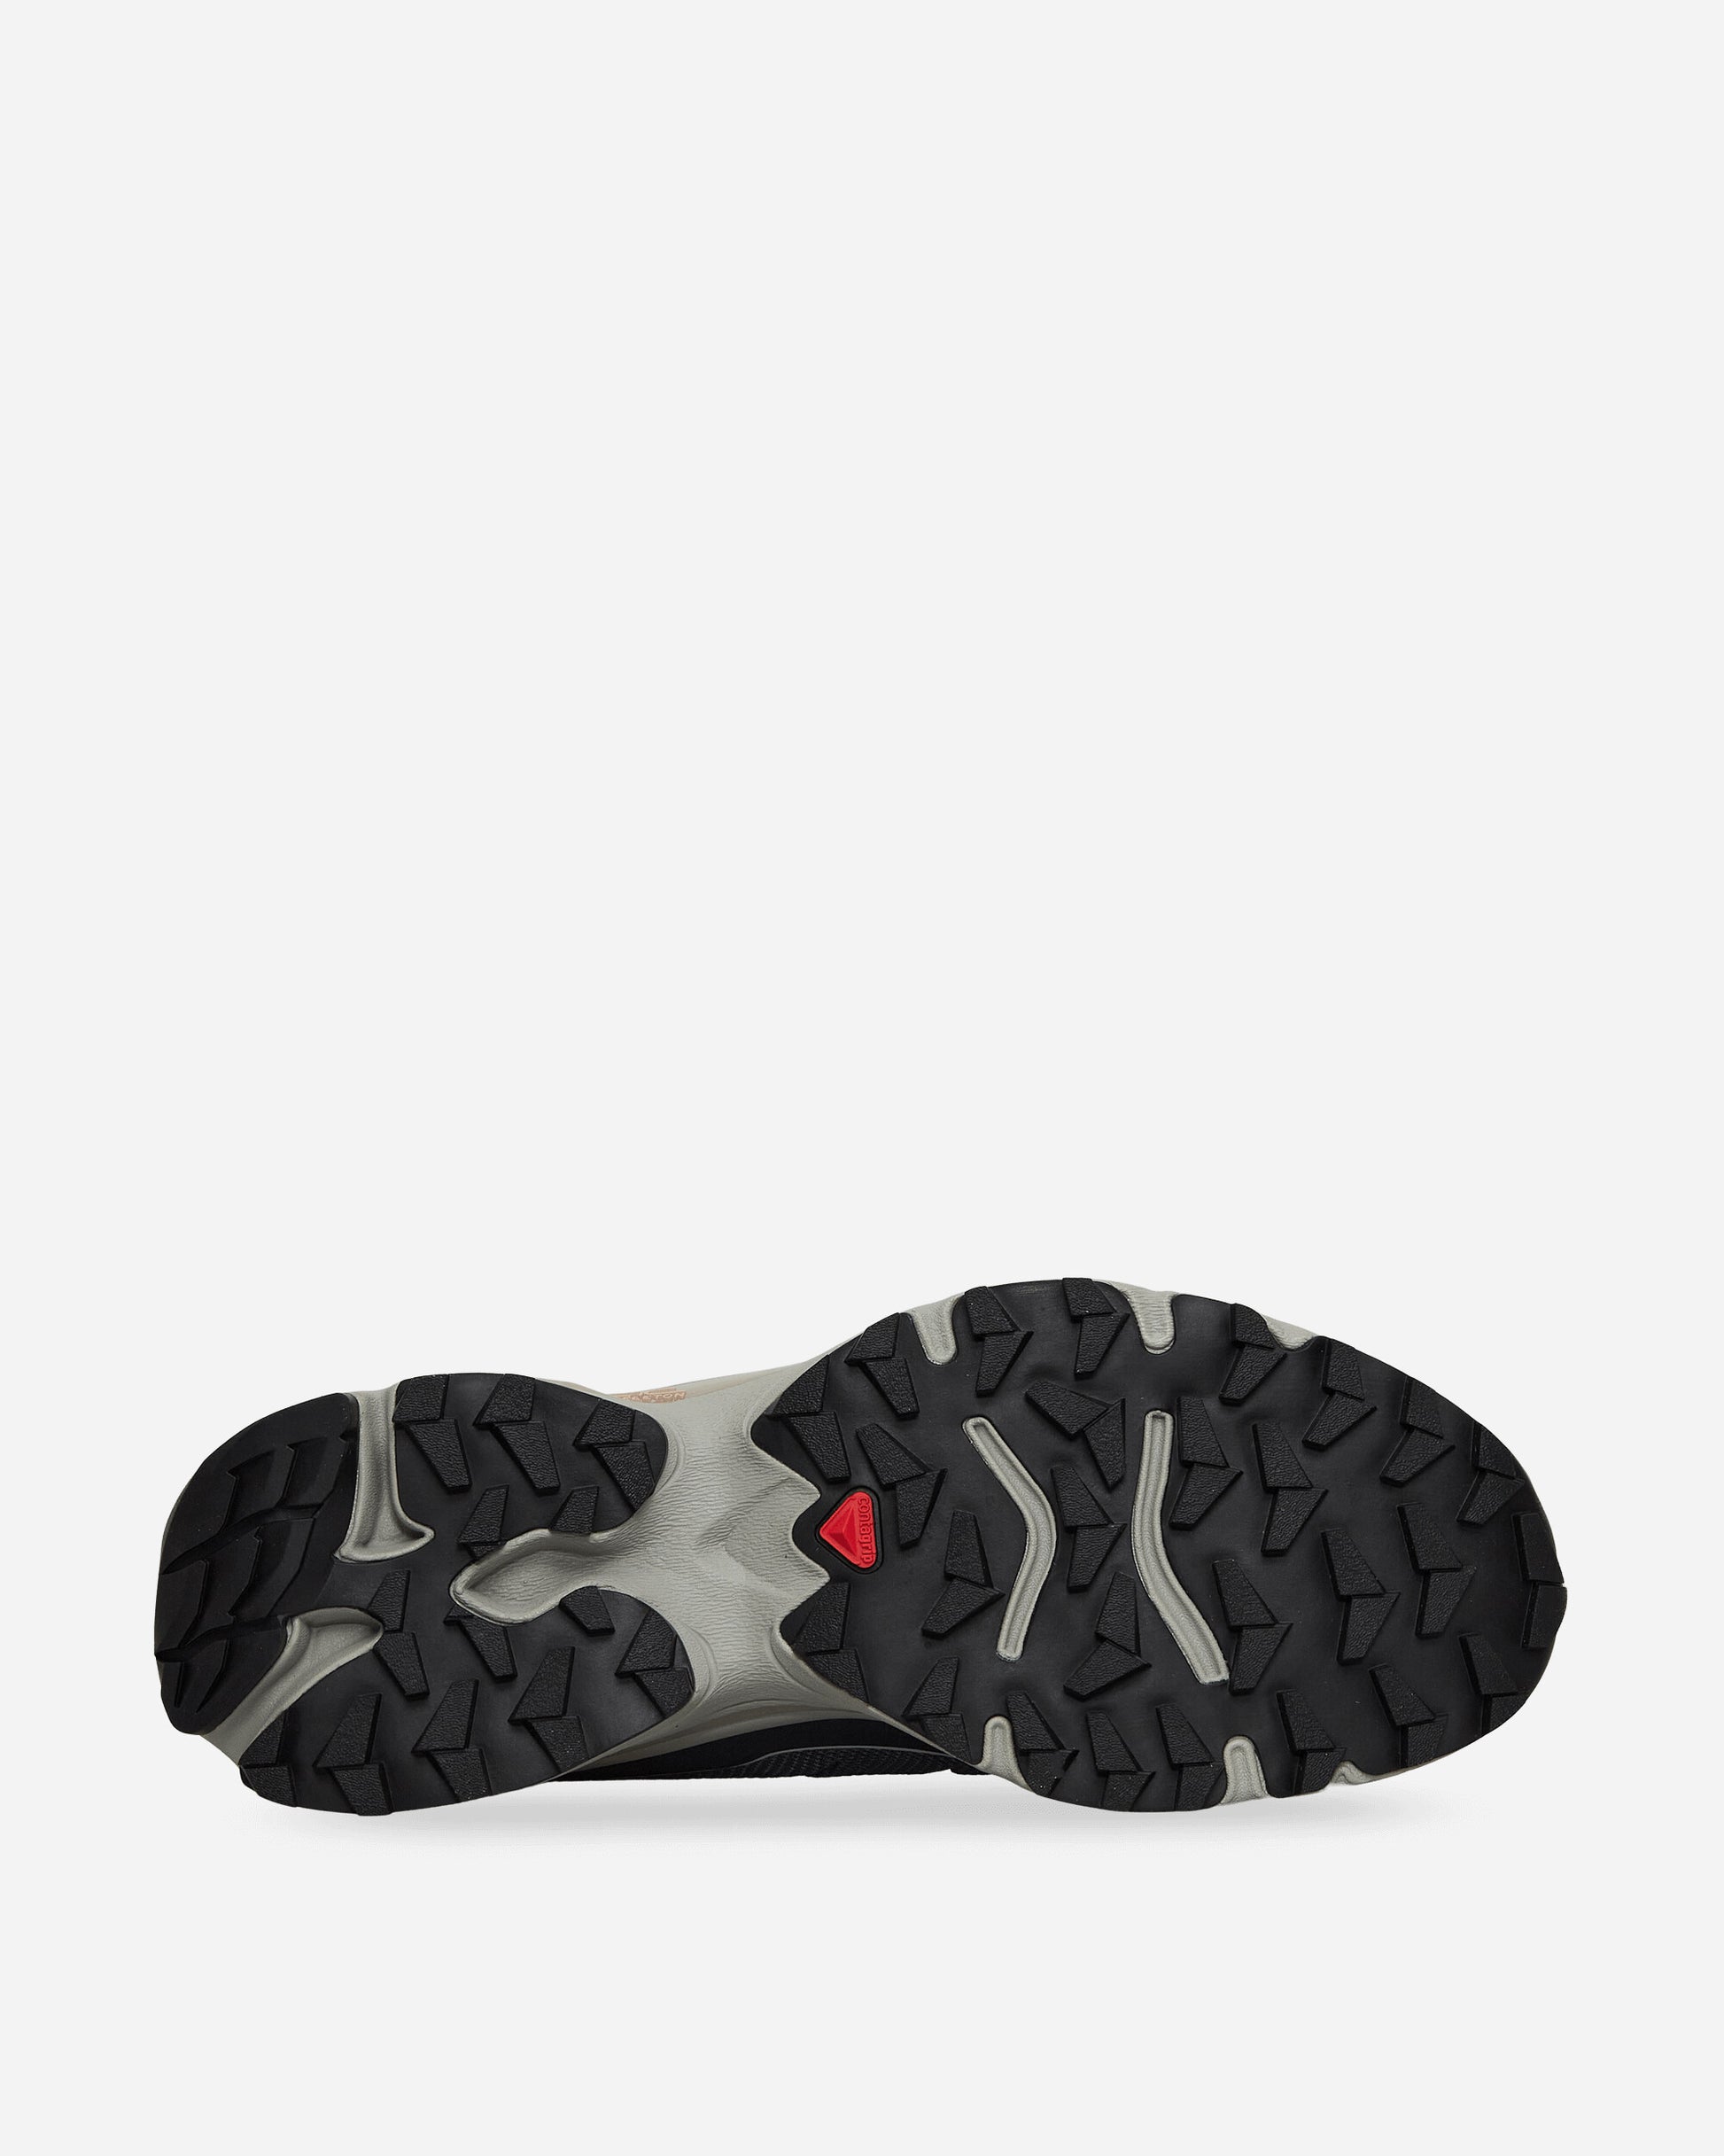 Salomon Xt-Slate Grisaille/Carbon Sneakers Low L47460700